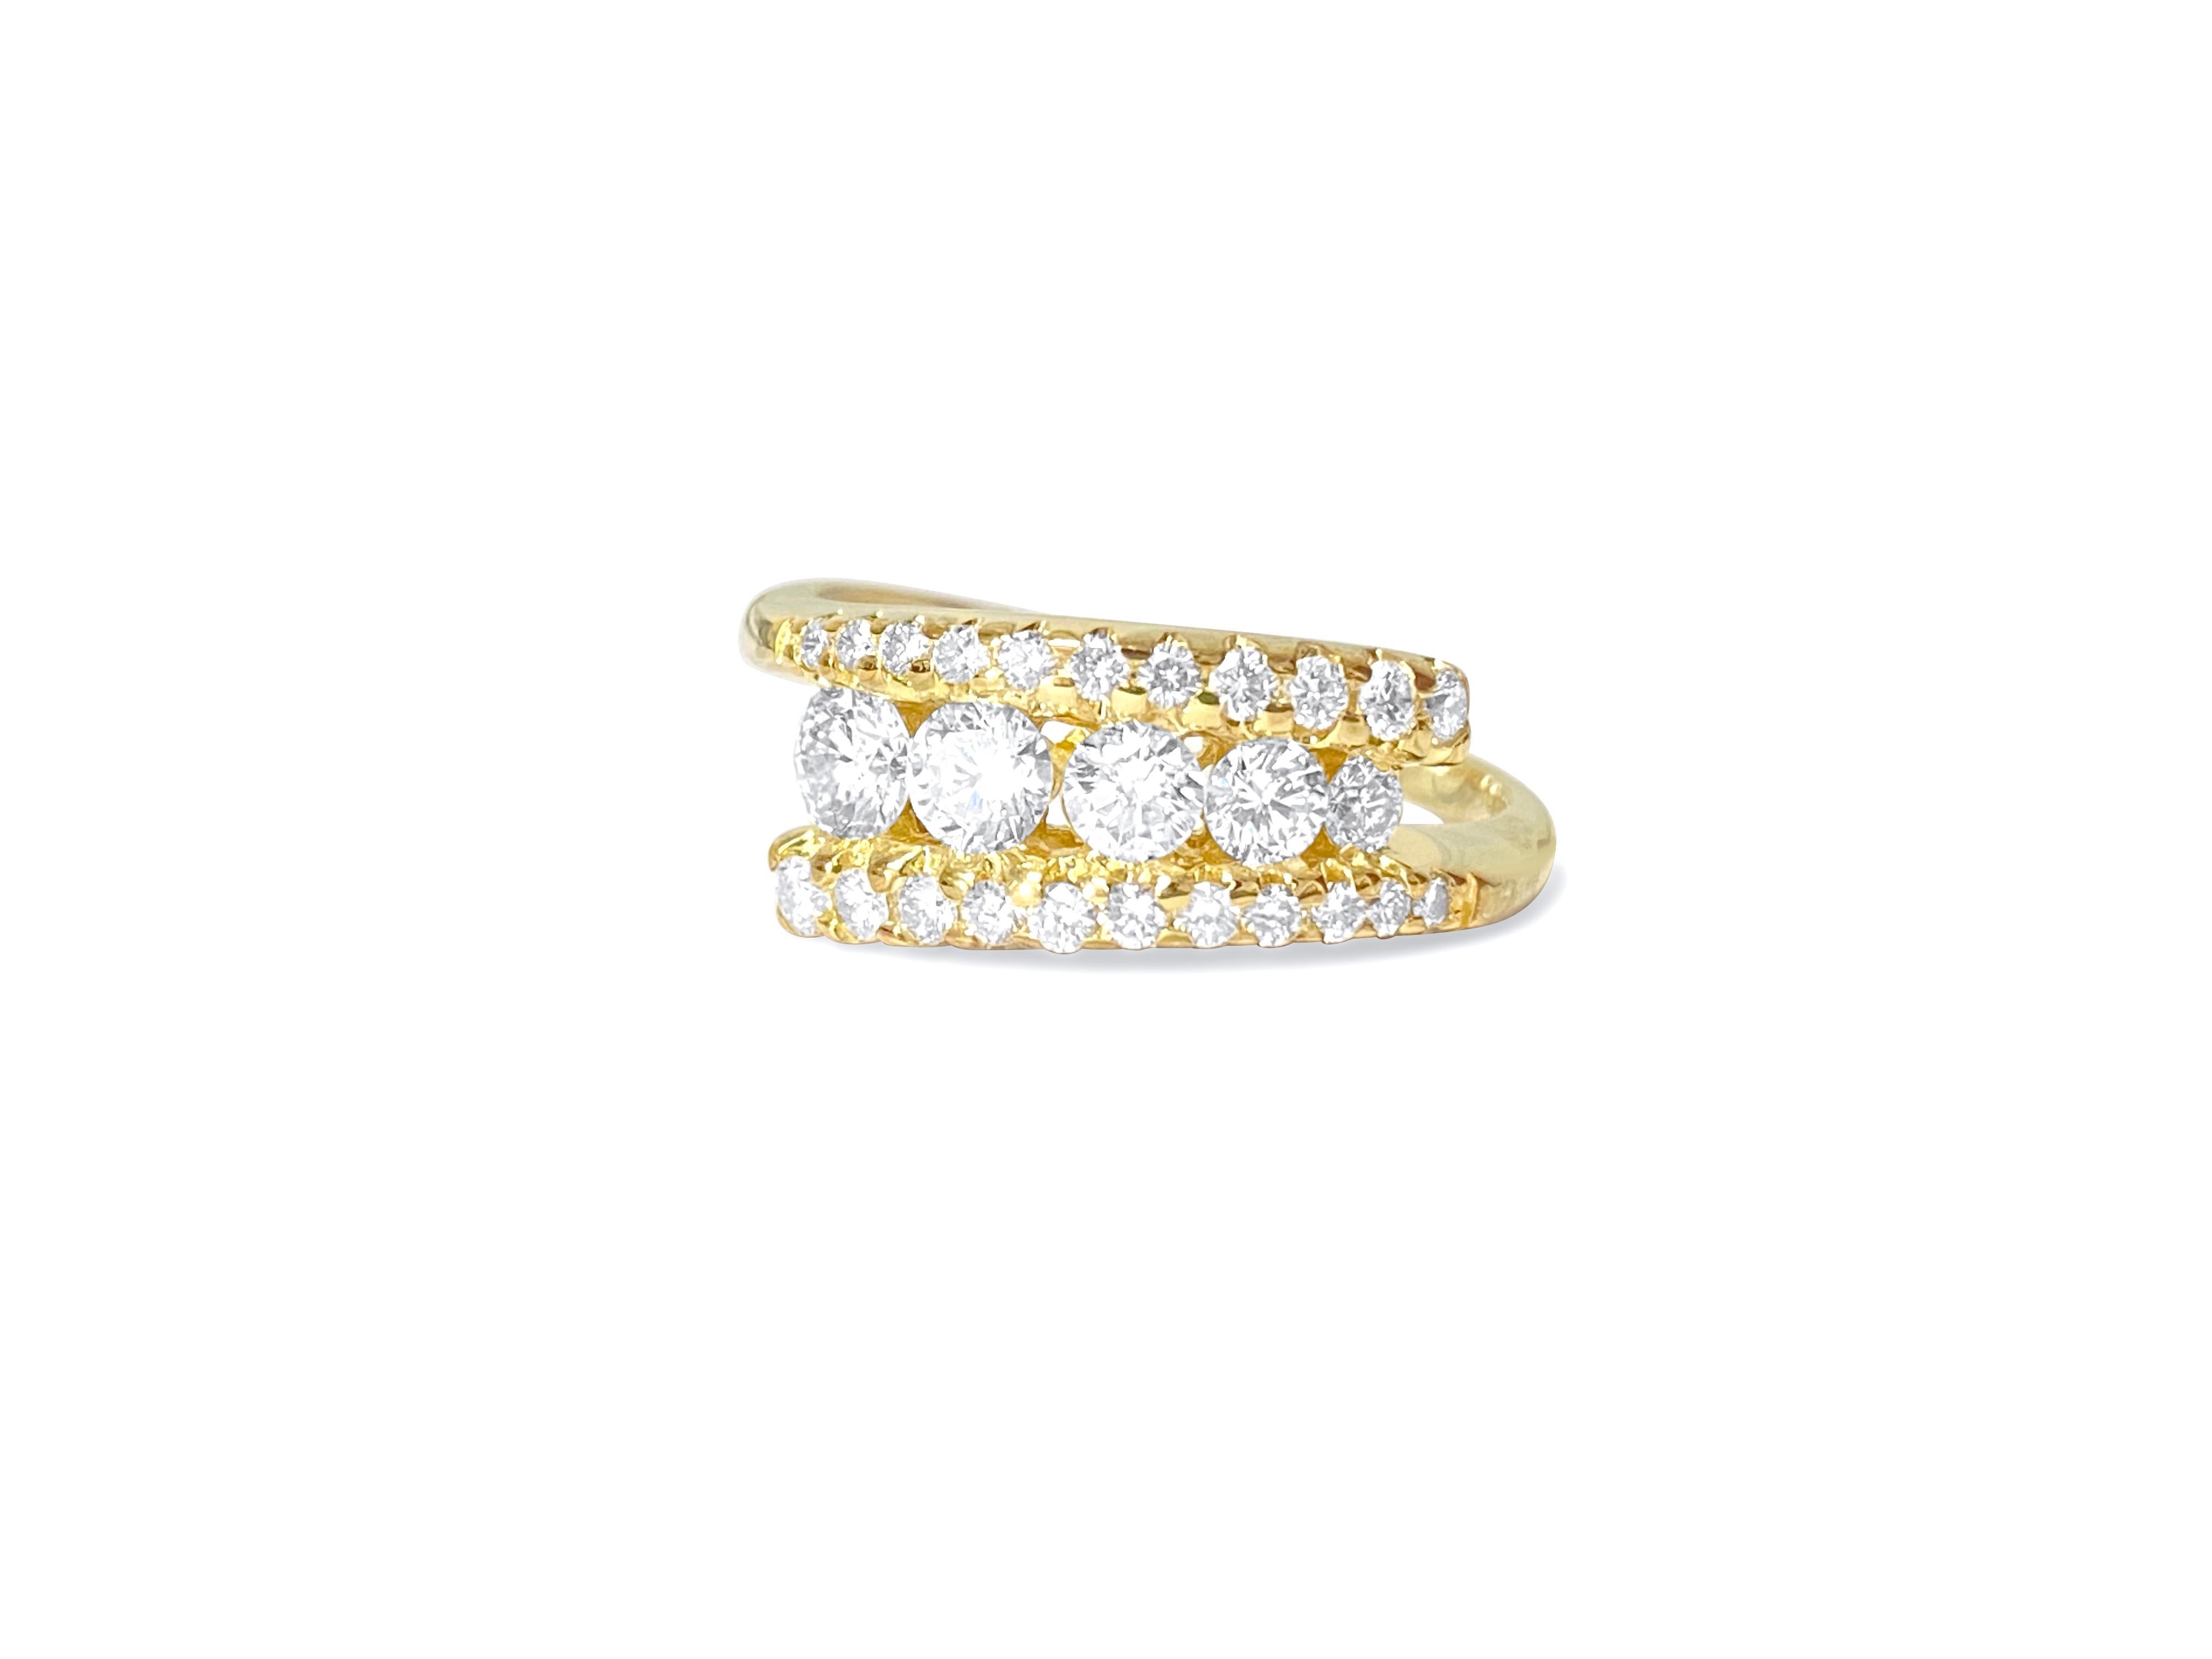 Cette bague est en or jaune 14 carats. Il contient des diamants d'un poids total de 1,10 carat. Les diamants sont clairs et brillants, d'une couleur allant de F à G. Ils sont taillés dans un style rond brillant. Ces diamants sont 100 % naturels et